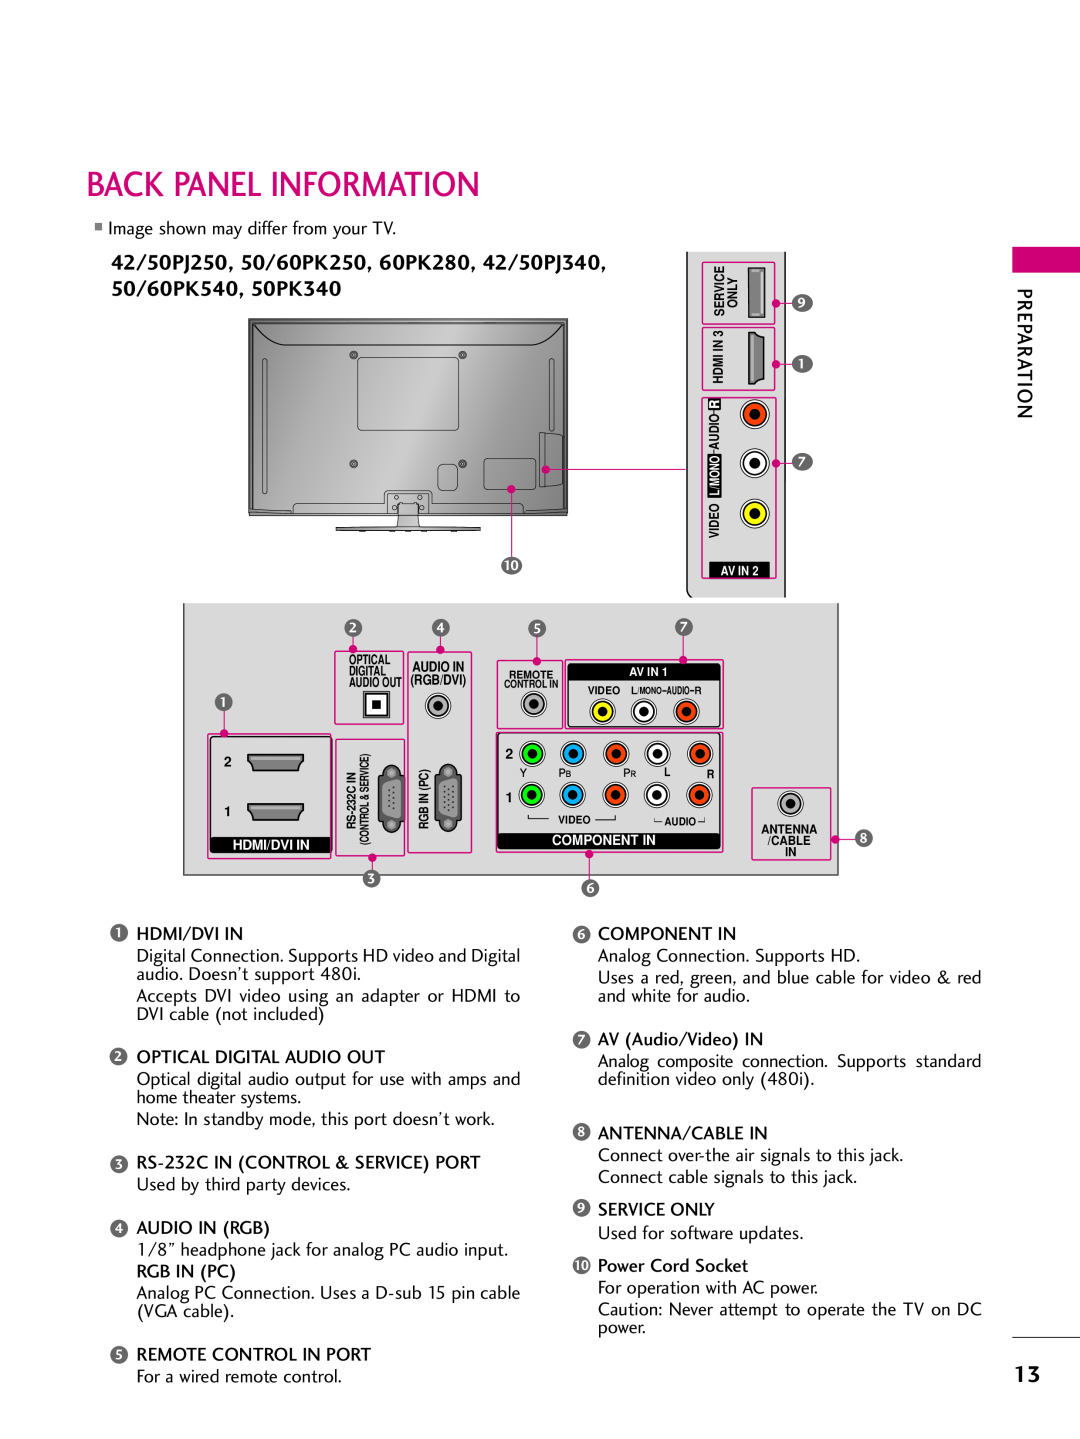 LG Electronics 42PJ350 Back Panel Information, 42/50PJ250, 50/60PK250, 60PK280, 42/50PJ340, 50/60PK540, 50PK340 